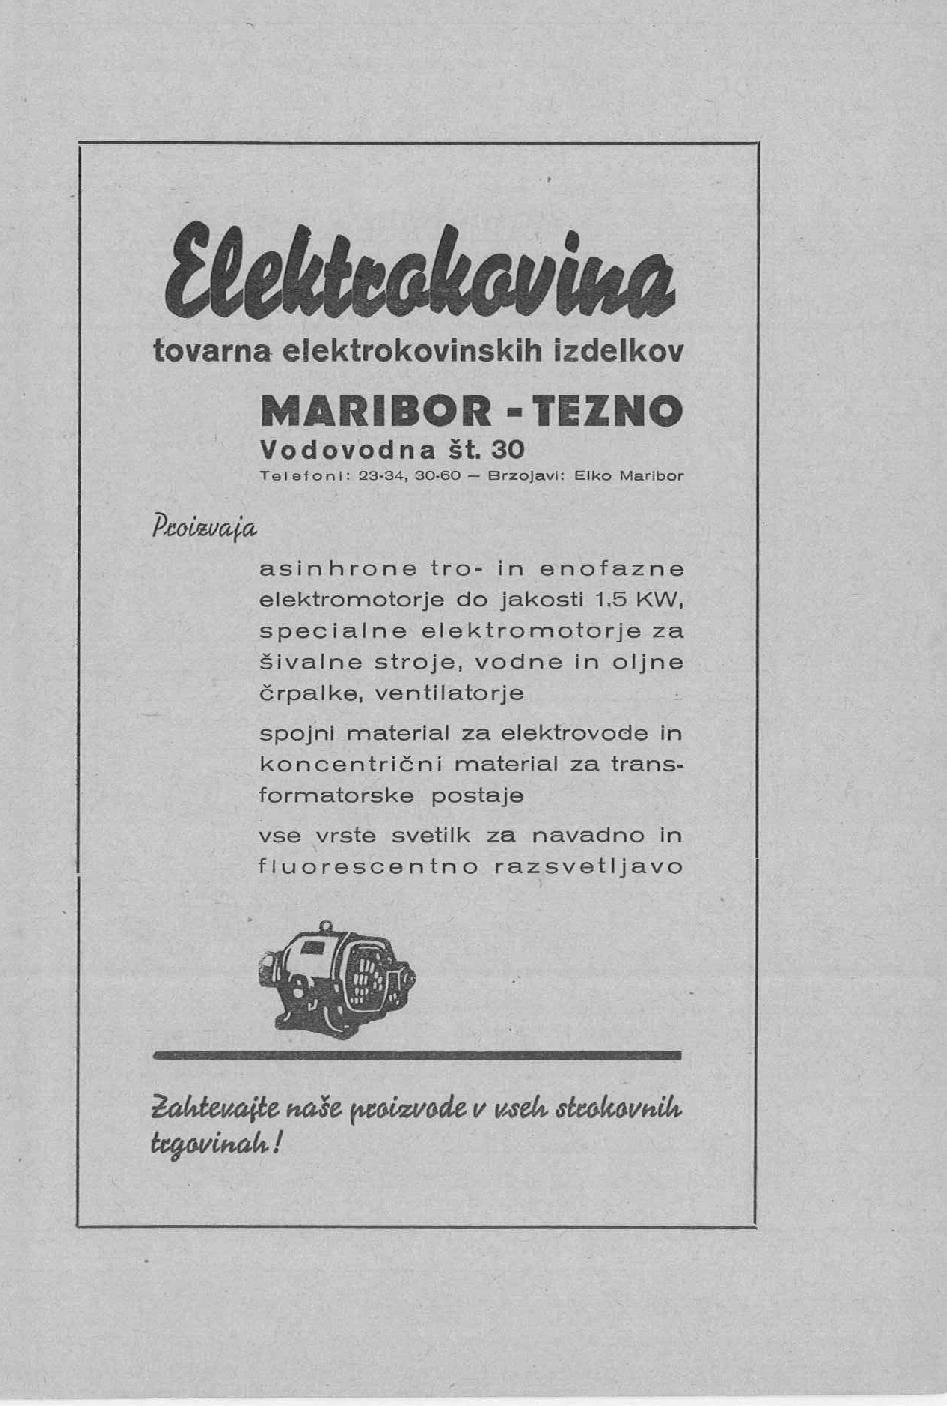 tiikkckmm tovarna elektrokovinskih izdelkov MARIBOR -TEZNO Vodovodna št. 30 Telefoni: 23-34, 30-60 Brzojavl: Elko Maribor Proizvaja asinhrone tro- in enofazne elektromotorje do jakosti 1.